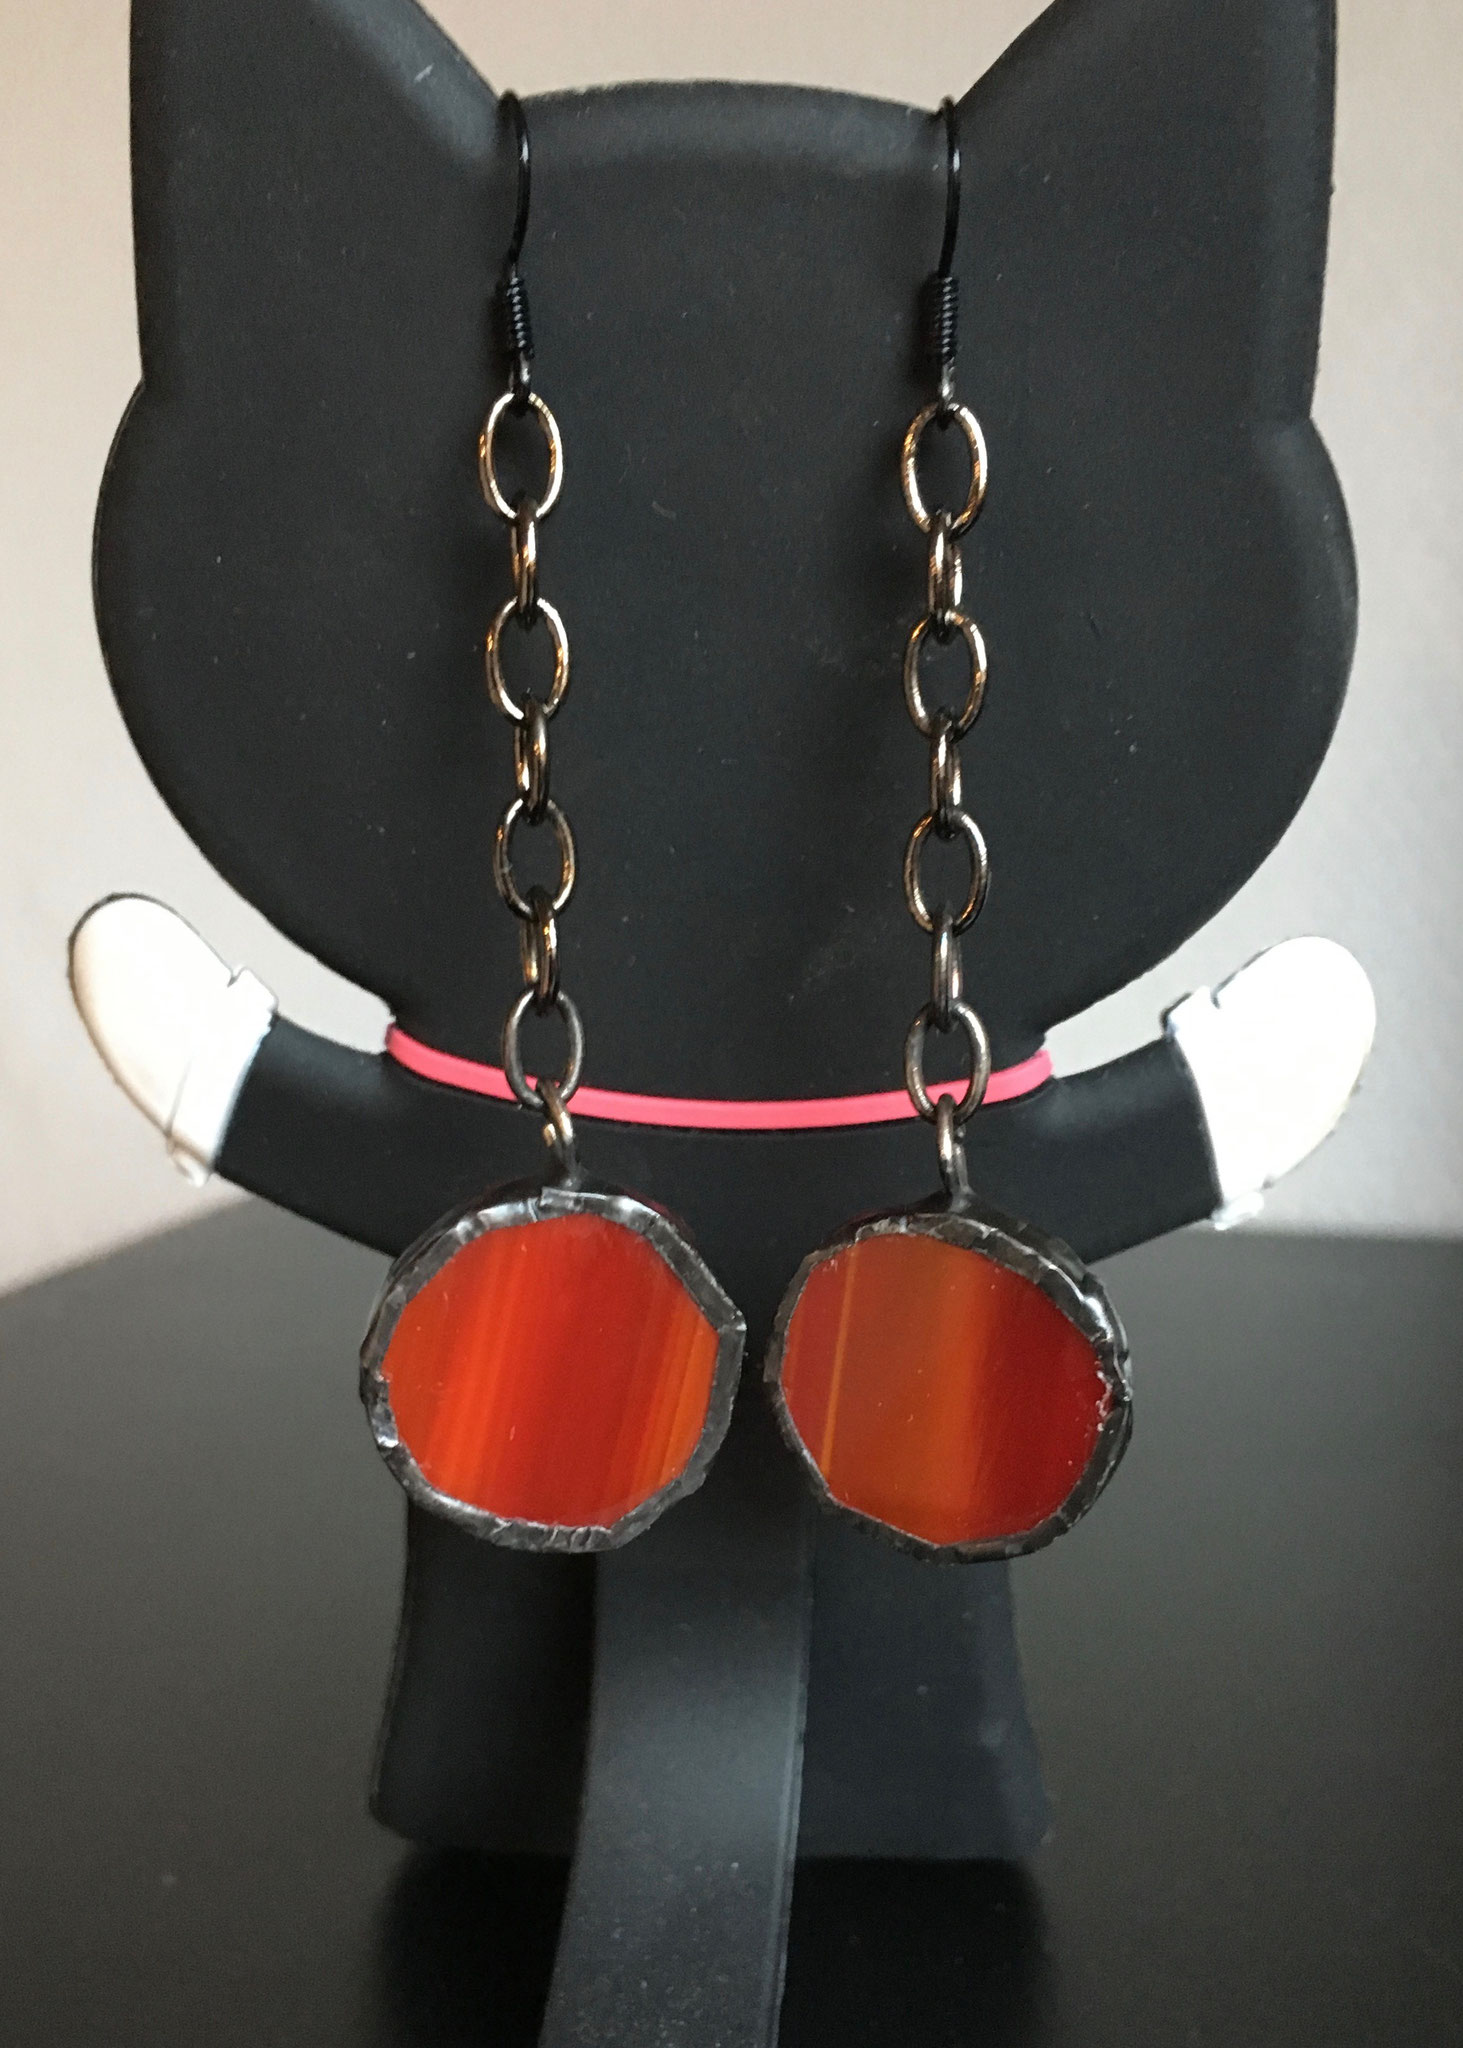 Boucles d'oreilles Tiffany rouges sur chaîne (6 x 2 cm) 9€     Ref: BO18